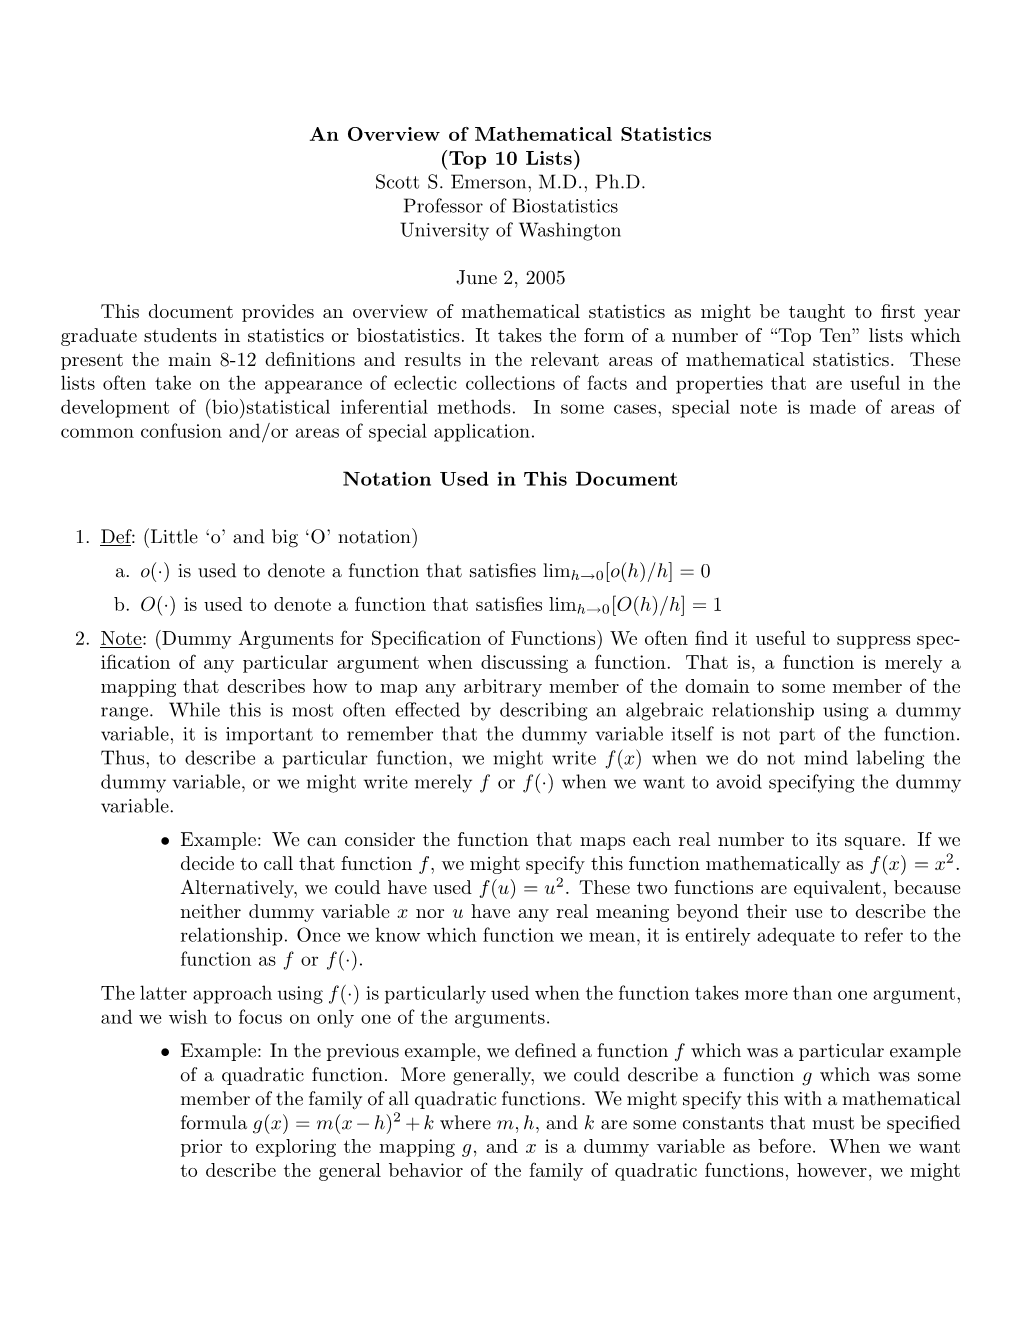 An Overview of Mathematical Statistics (Top 10 Lists) Scott S. Emerson, M.D., Ph.D